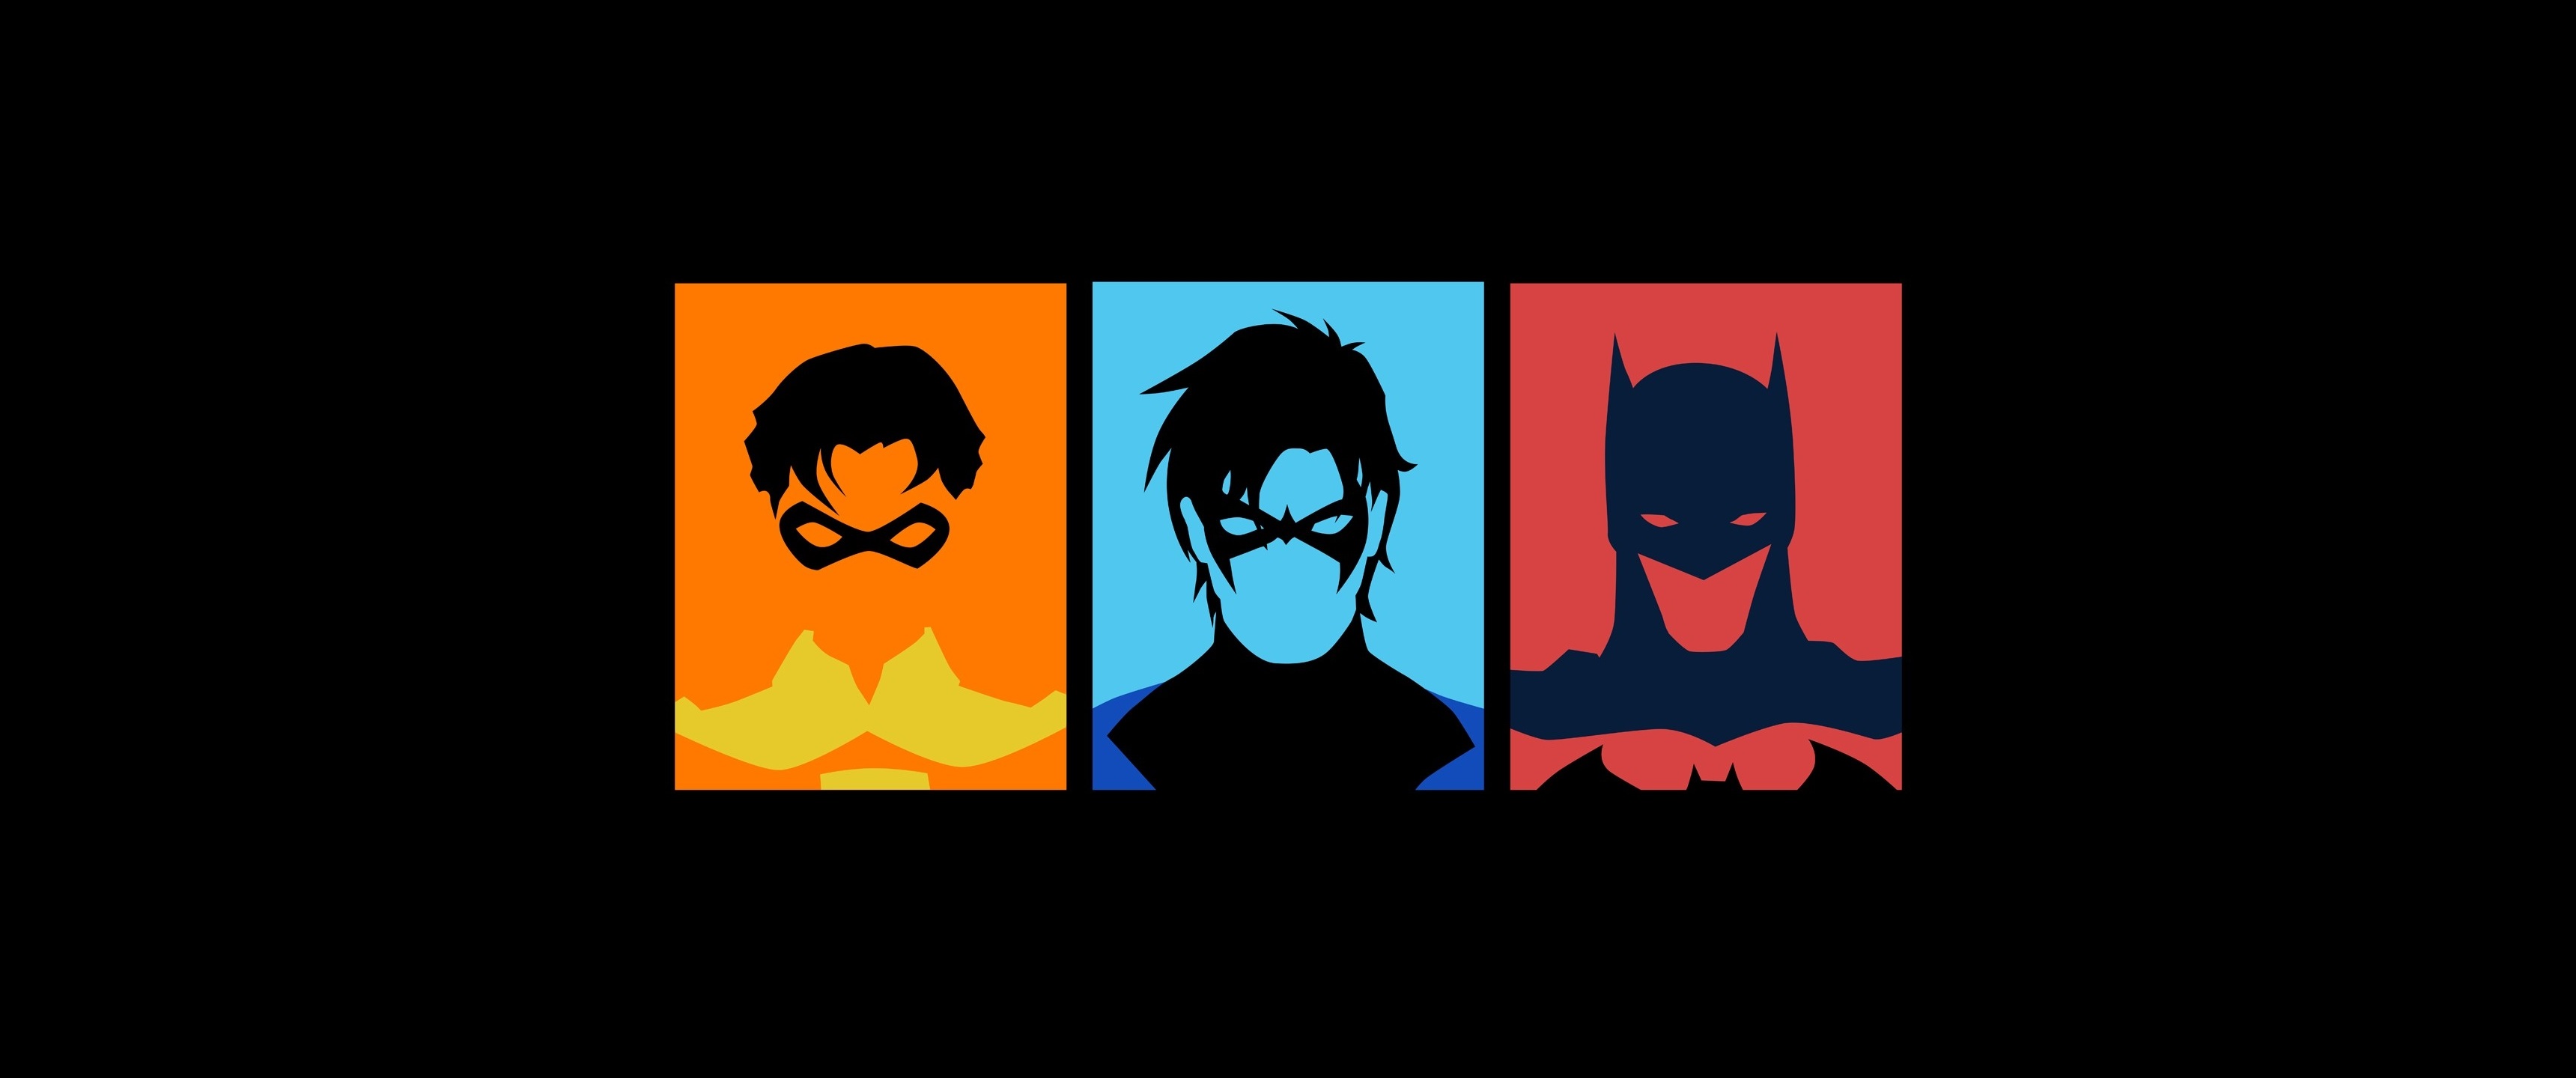 Скачать обои бесплатно Комиксы, Бэтмен, Найтвинг, Робин (Комиксы Dc) картинка на рабочий стол ПК